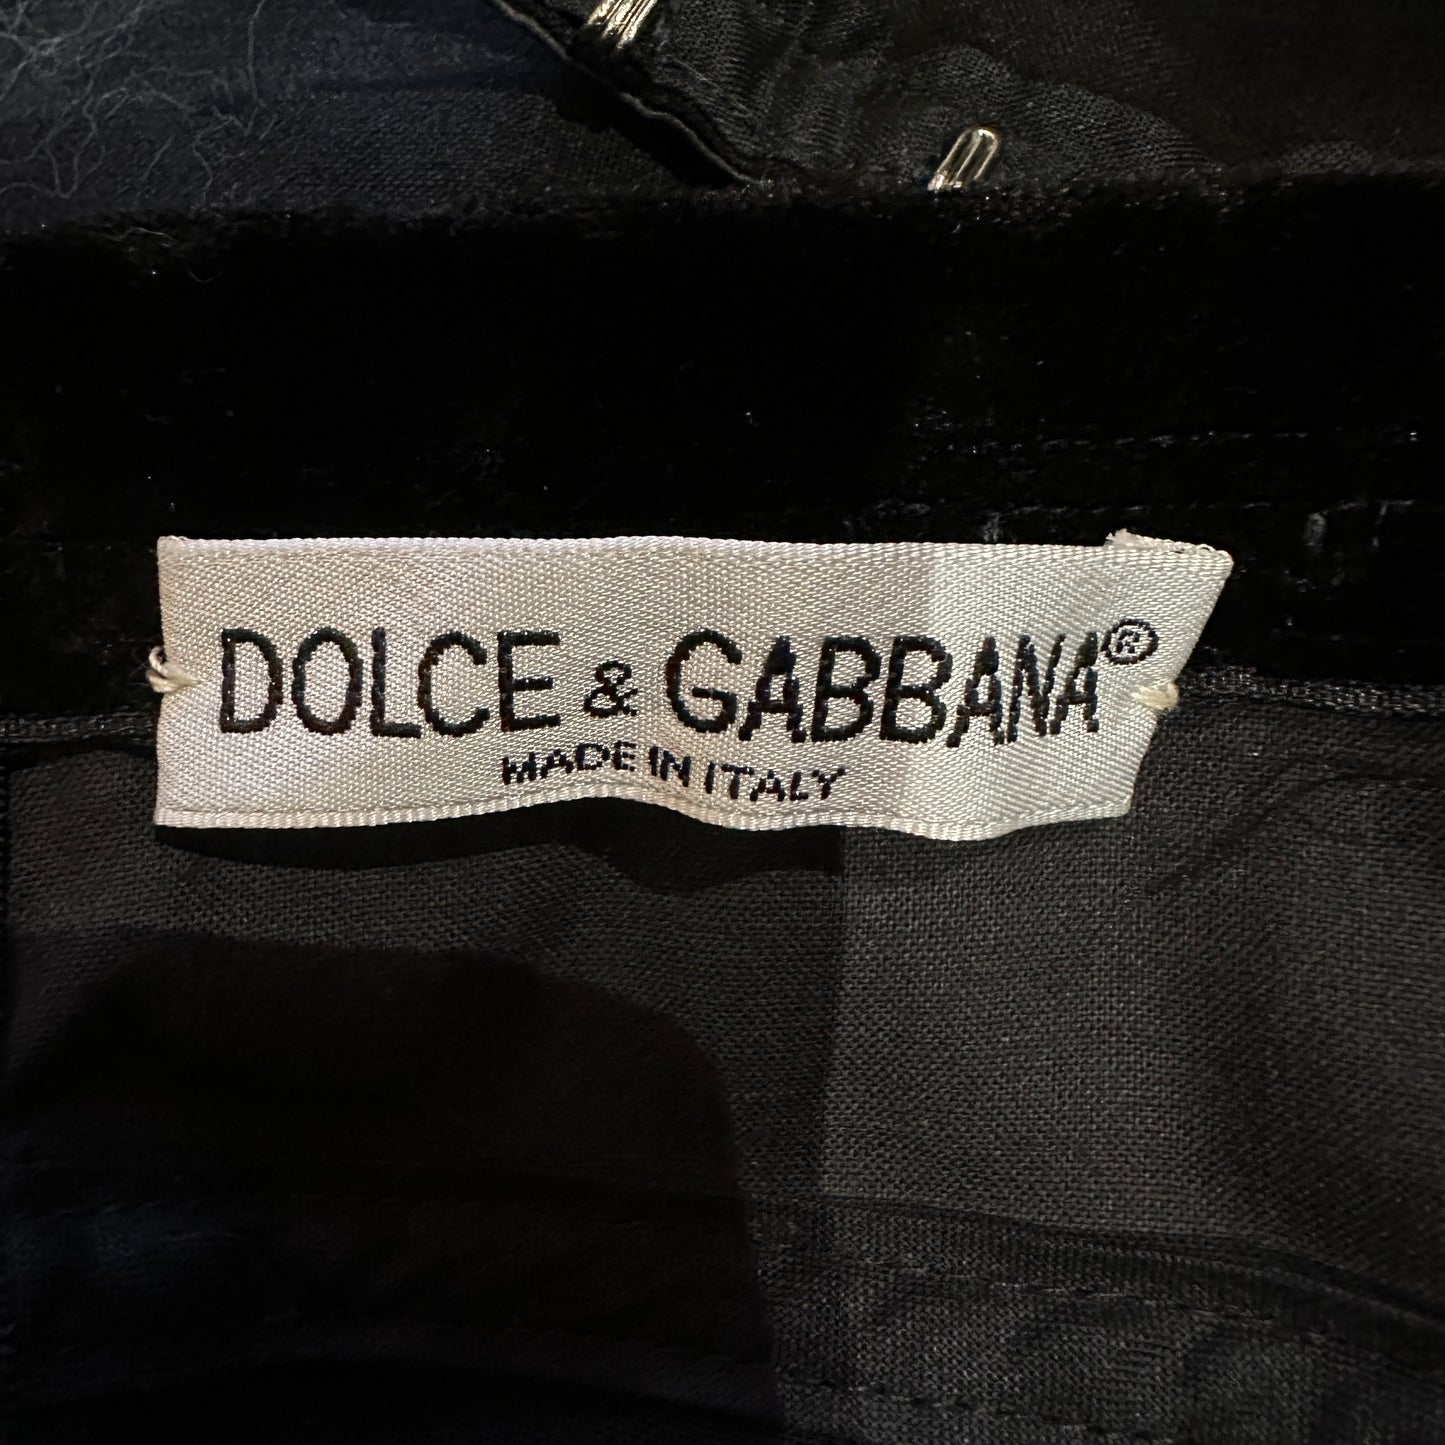 Dolce & Gabbana Lingerie Style Skirt